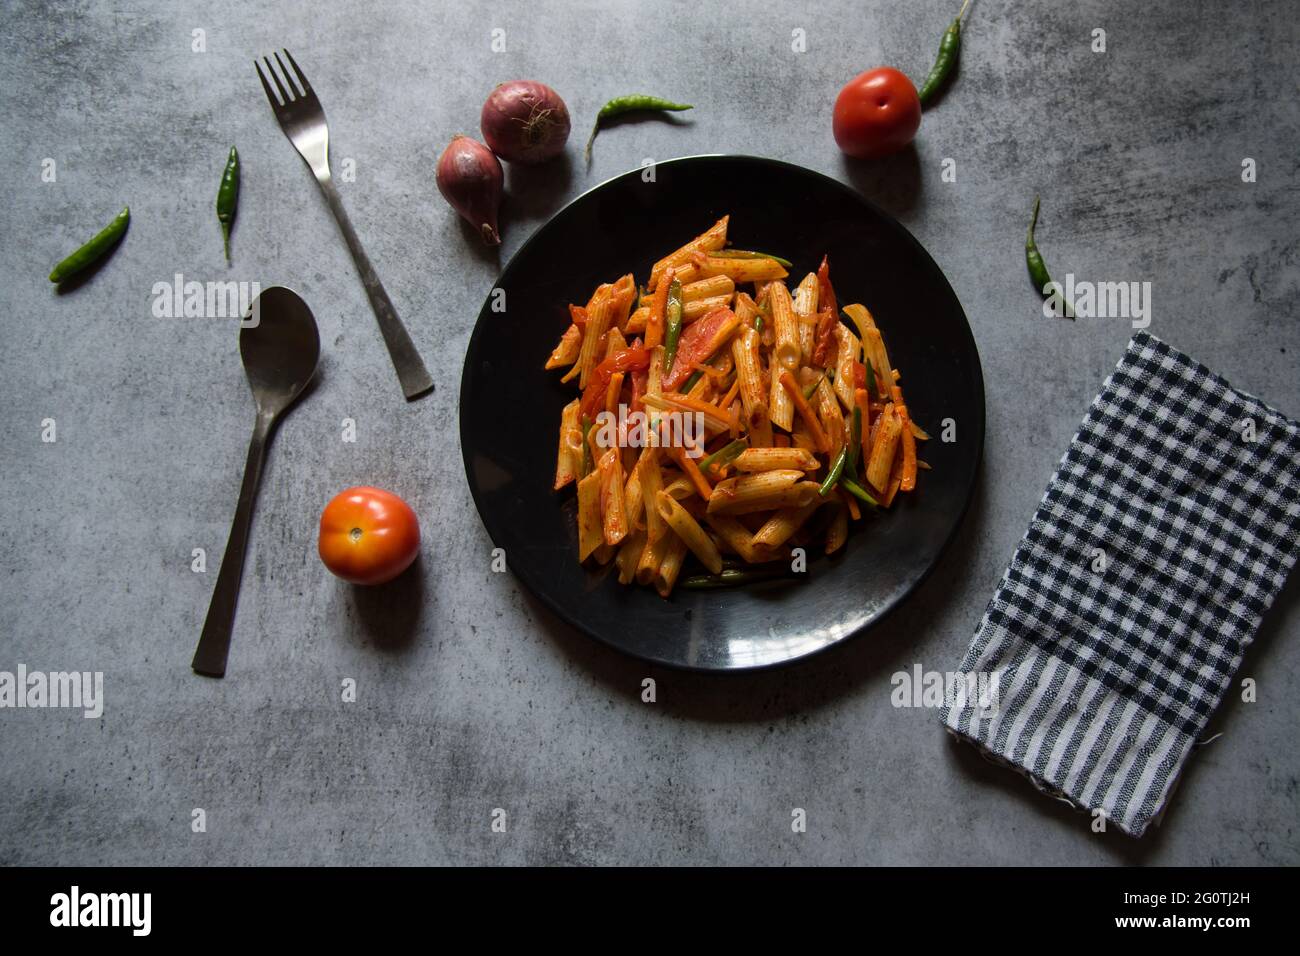 Pâtes alimentaires italiennes avec sauce tomate sur une assiette noire. Vue de dessus. Banque D'Images